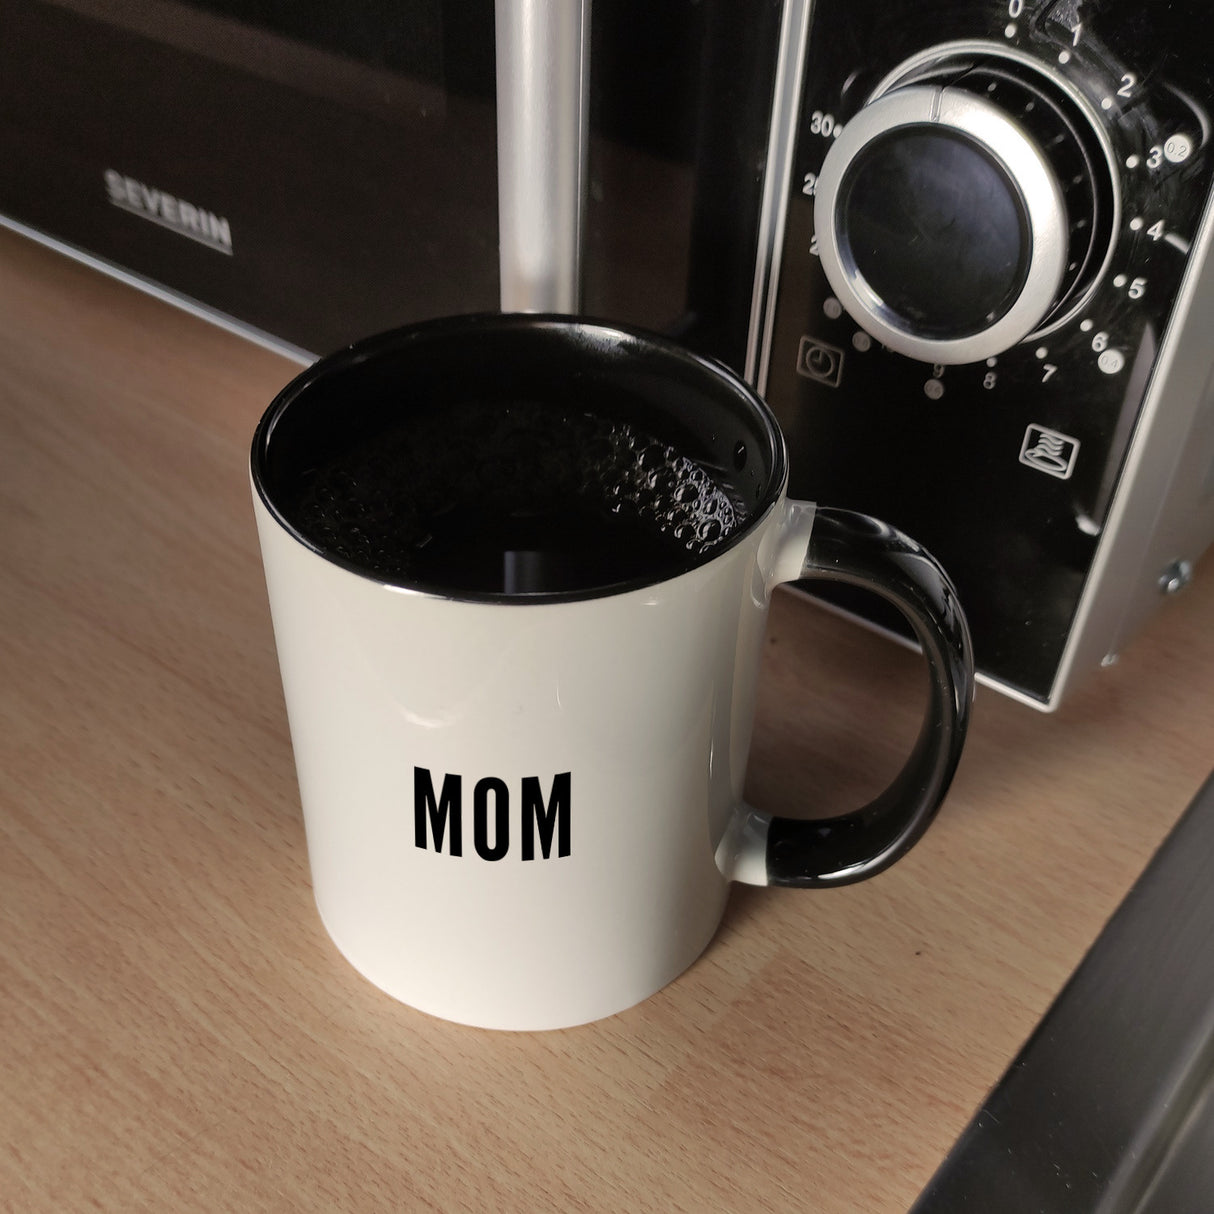 MOM Kaffeebecher